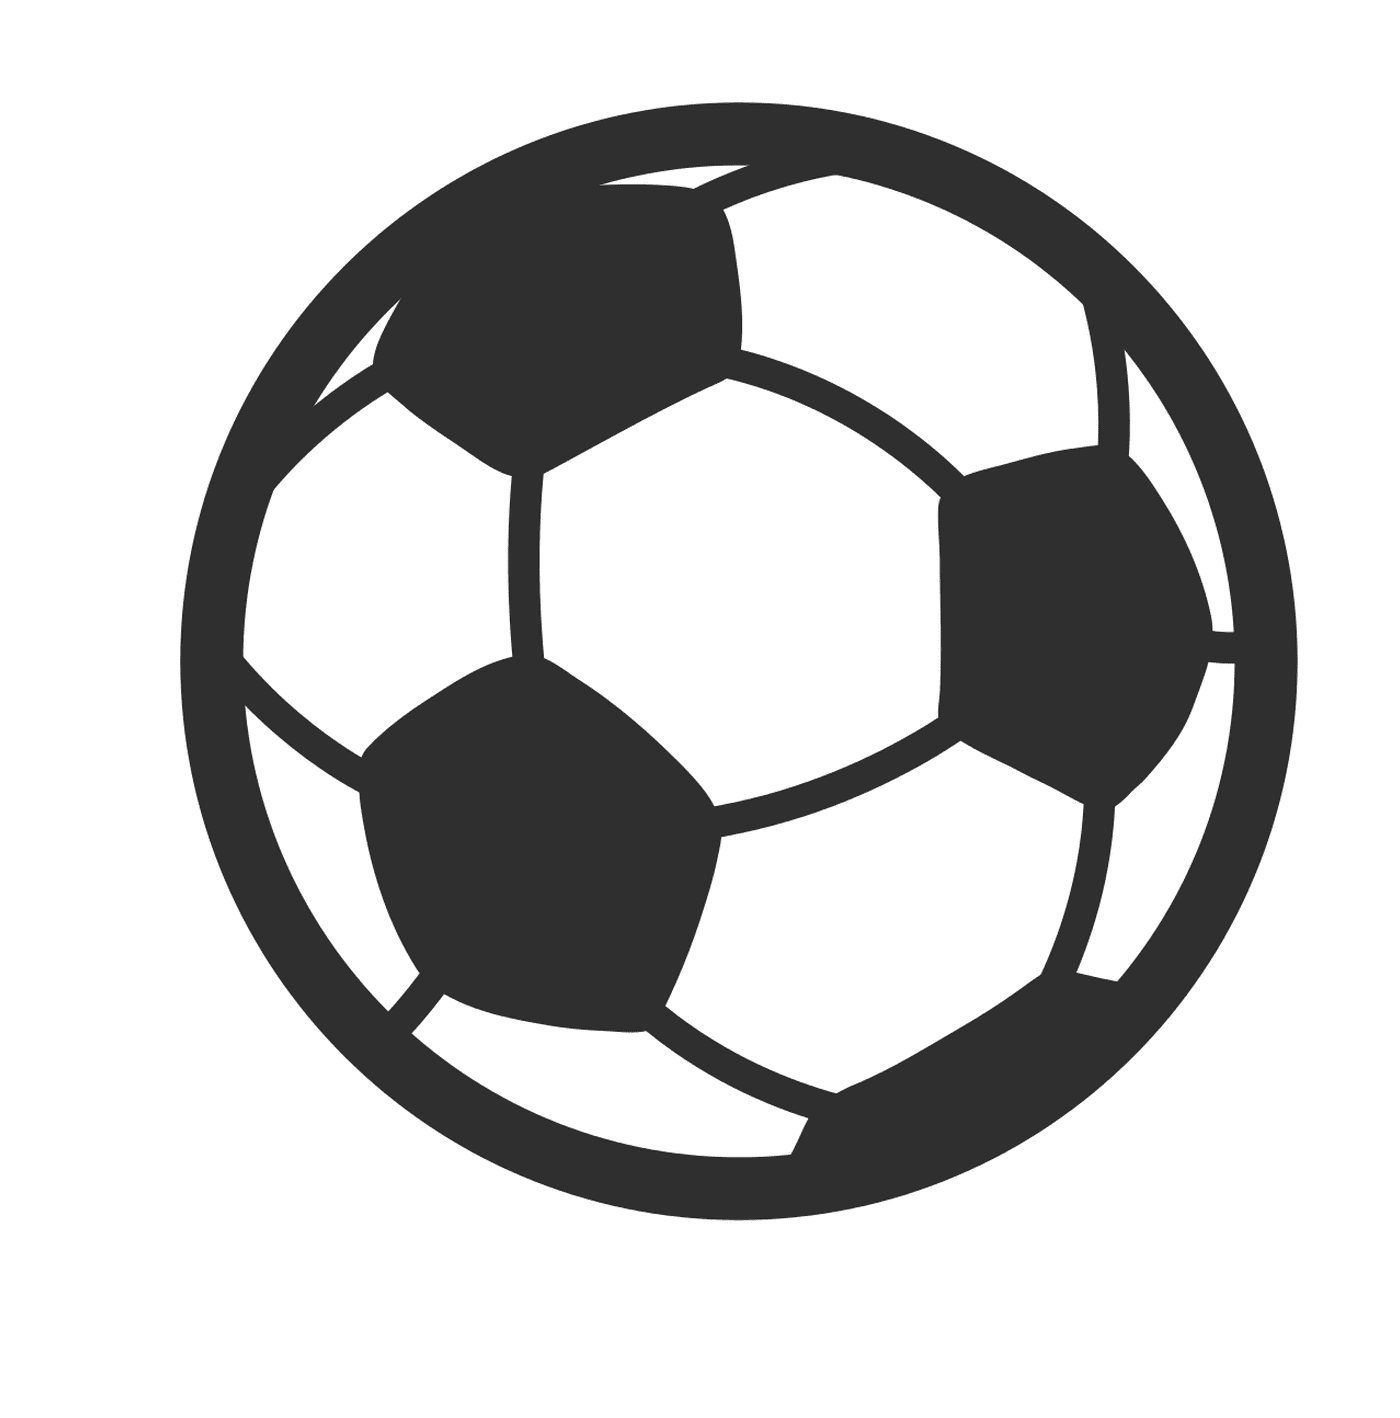  Uma bola de futebol 